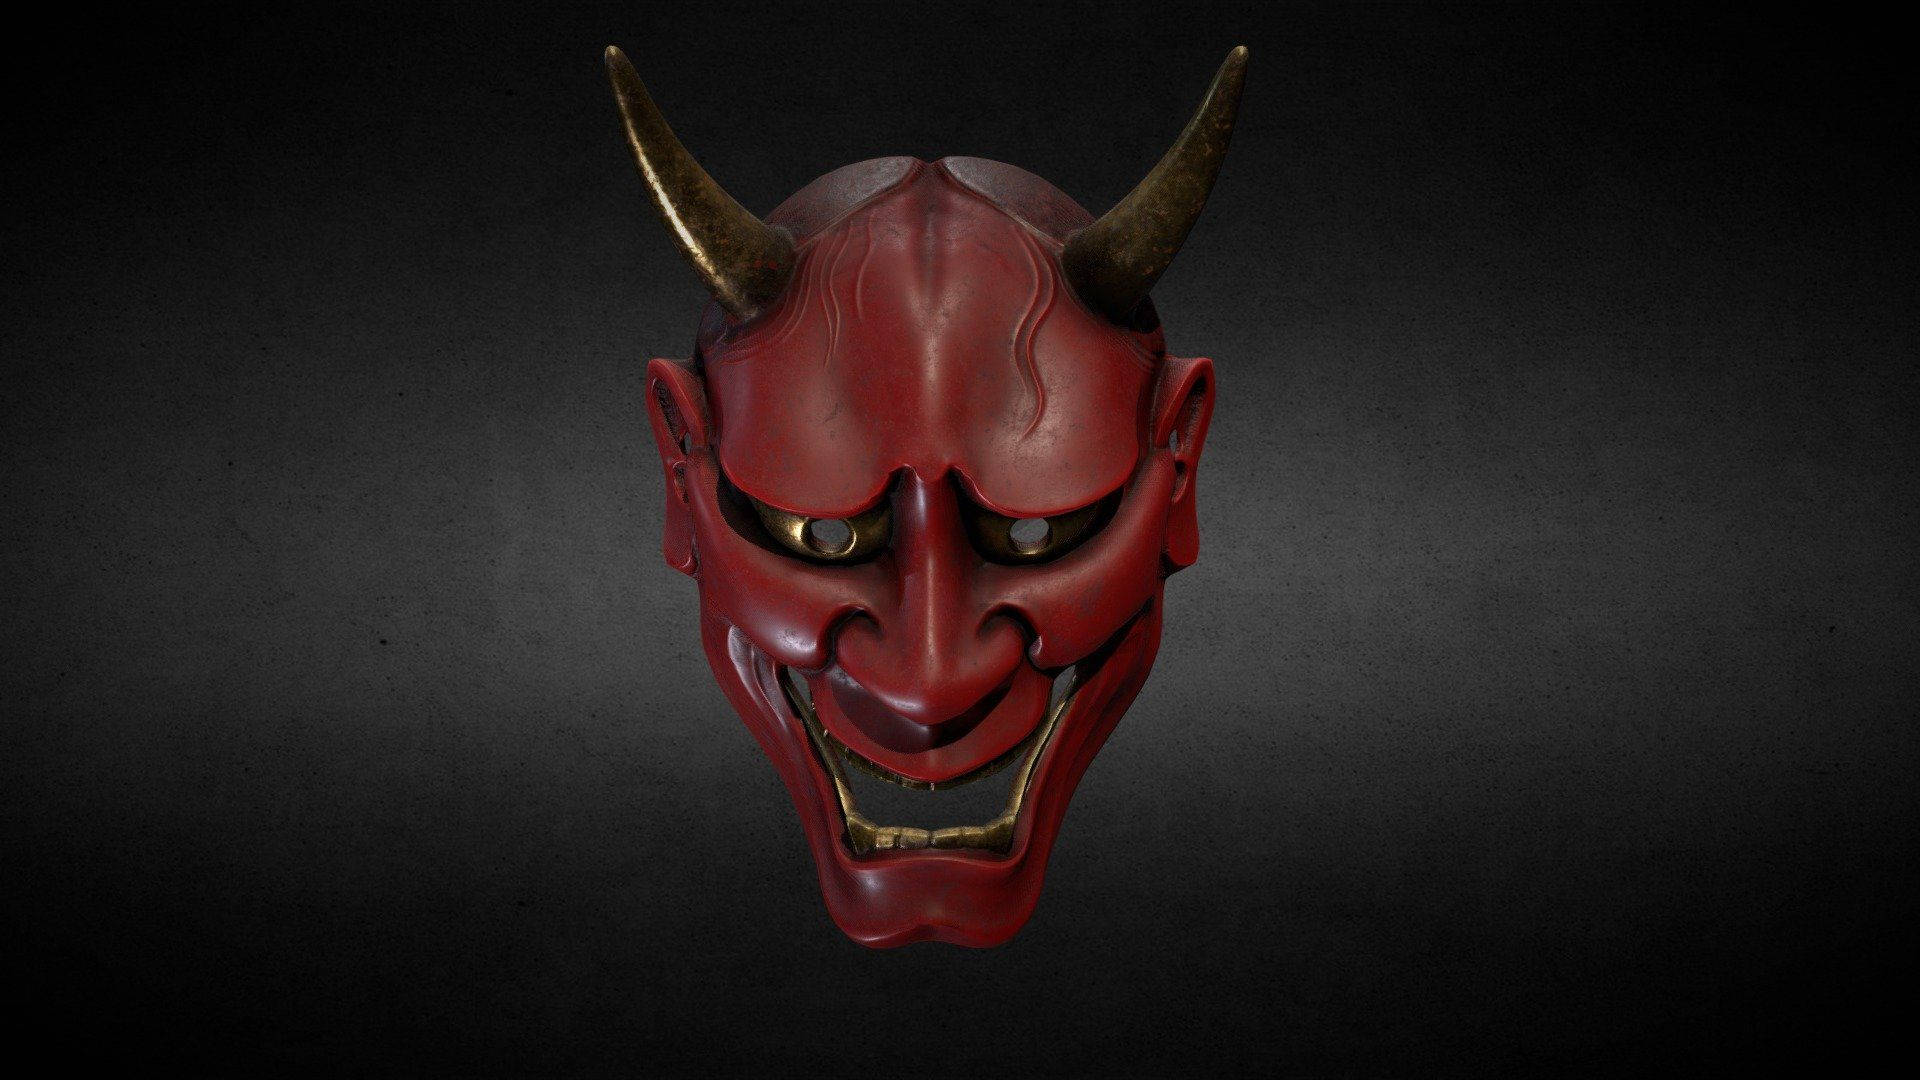 Intriguing Red Oni Mask - Symbol Of Japanese Mythology